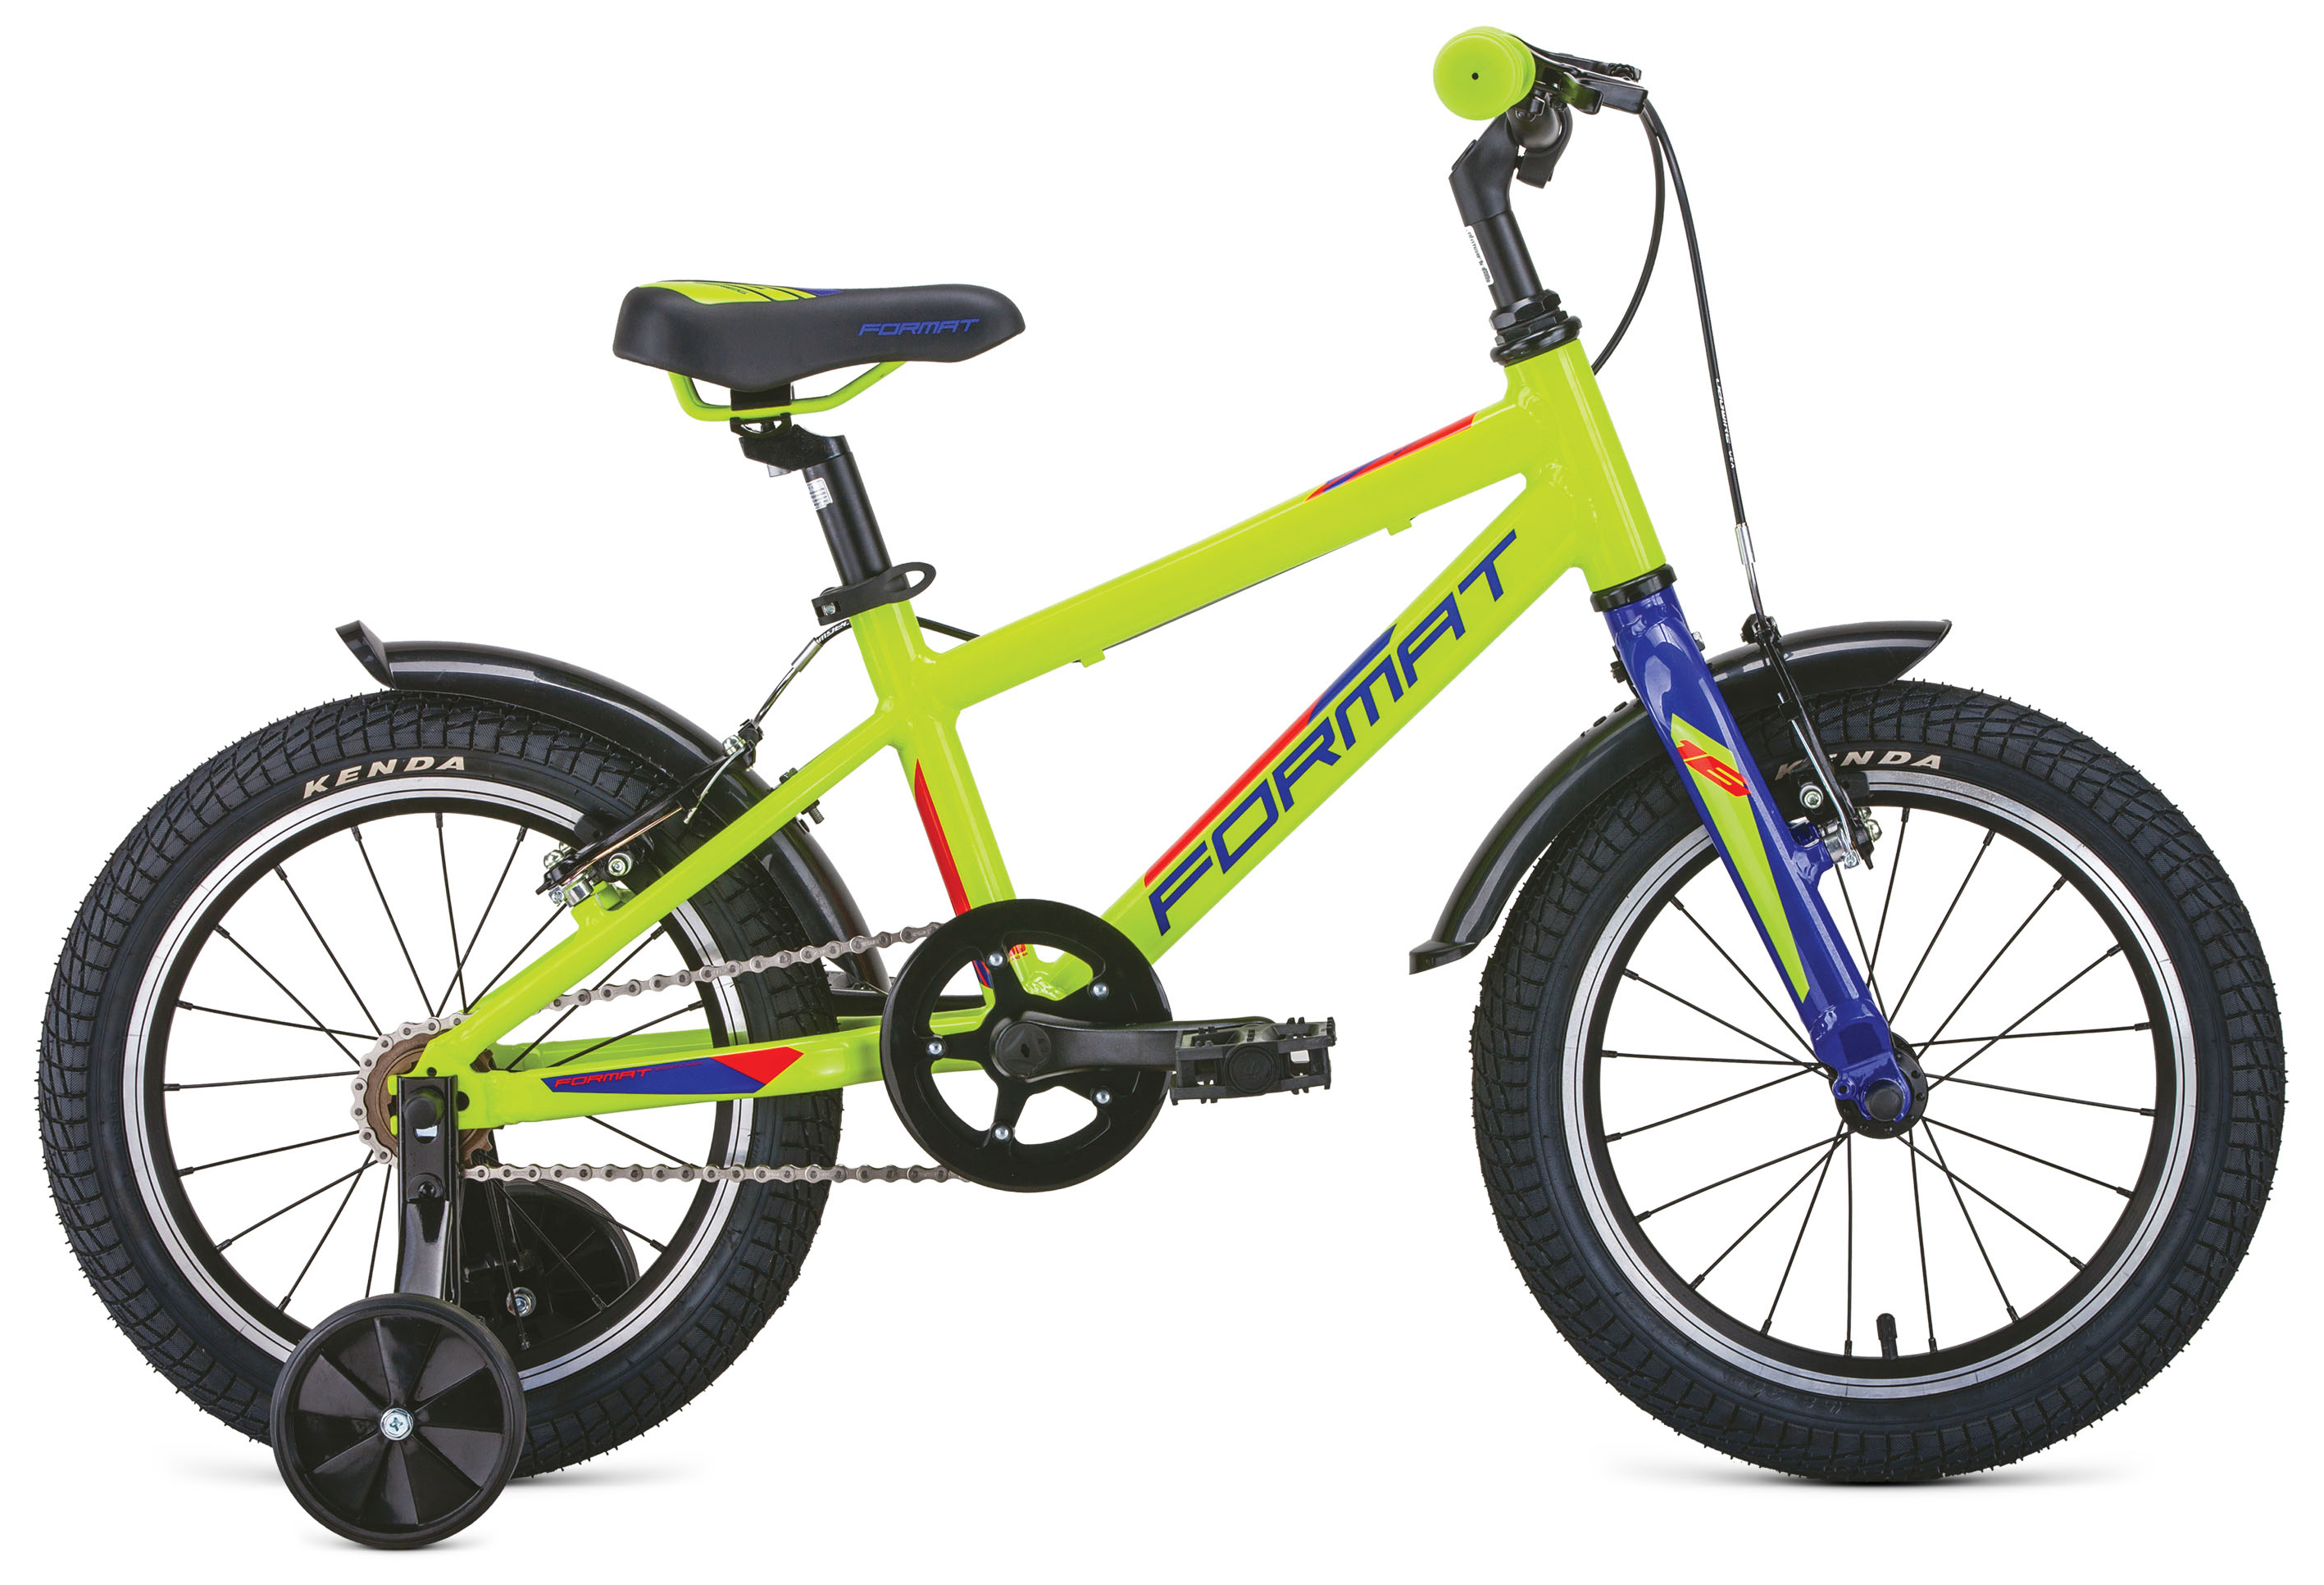  Отзывы о Детском велосипеде Format Kids 16 2020